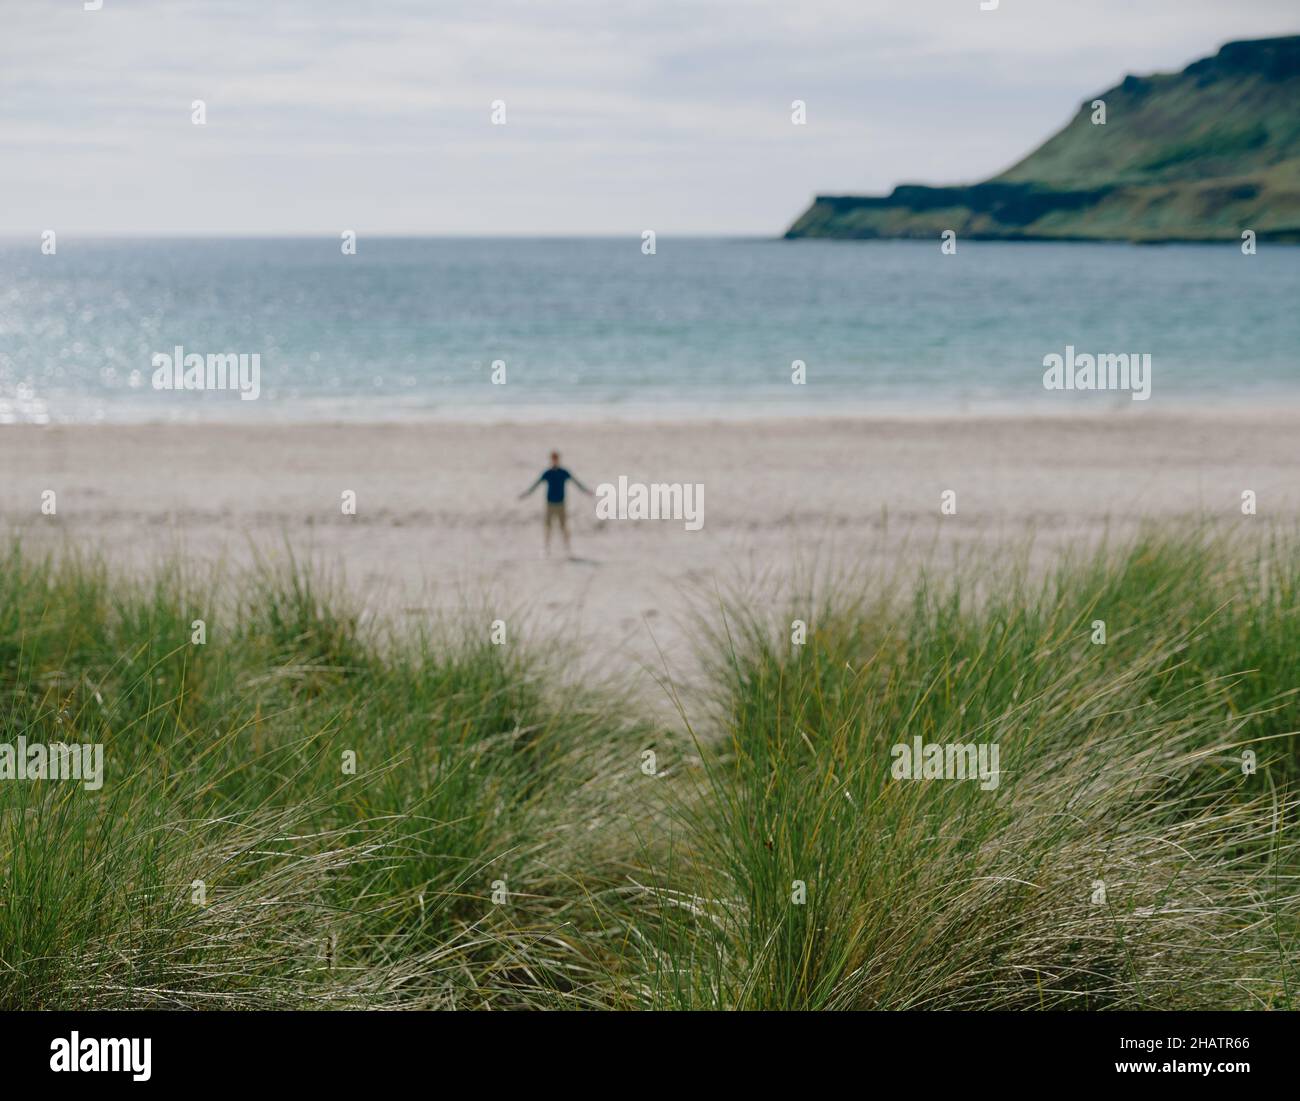 Figura solitaria en una playa escocesa con dunas de arena de hierba Marram y paisaje de verano en la isla de Mull, Inner Hebrides, Escocia Reino Unido - escapada Foto de stock